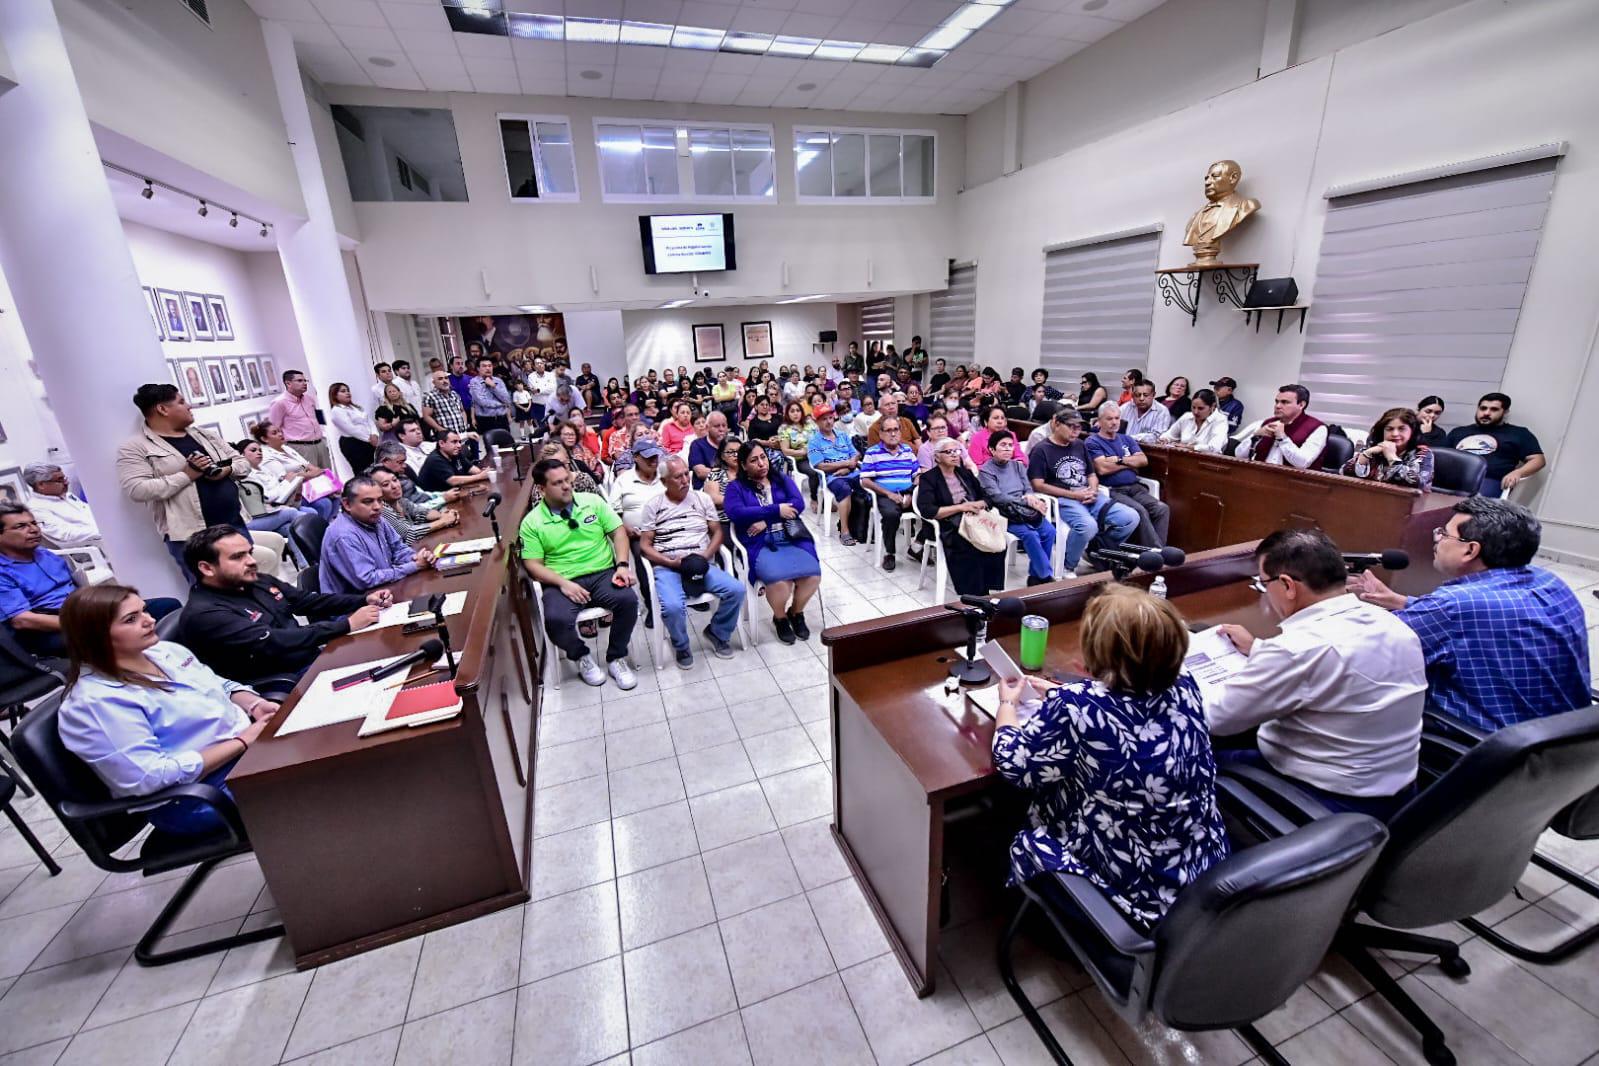 $!Iniciará el proceso de regularización de las viviendas de Hogar el Pescador, en Mazatlán